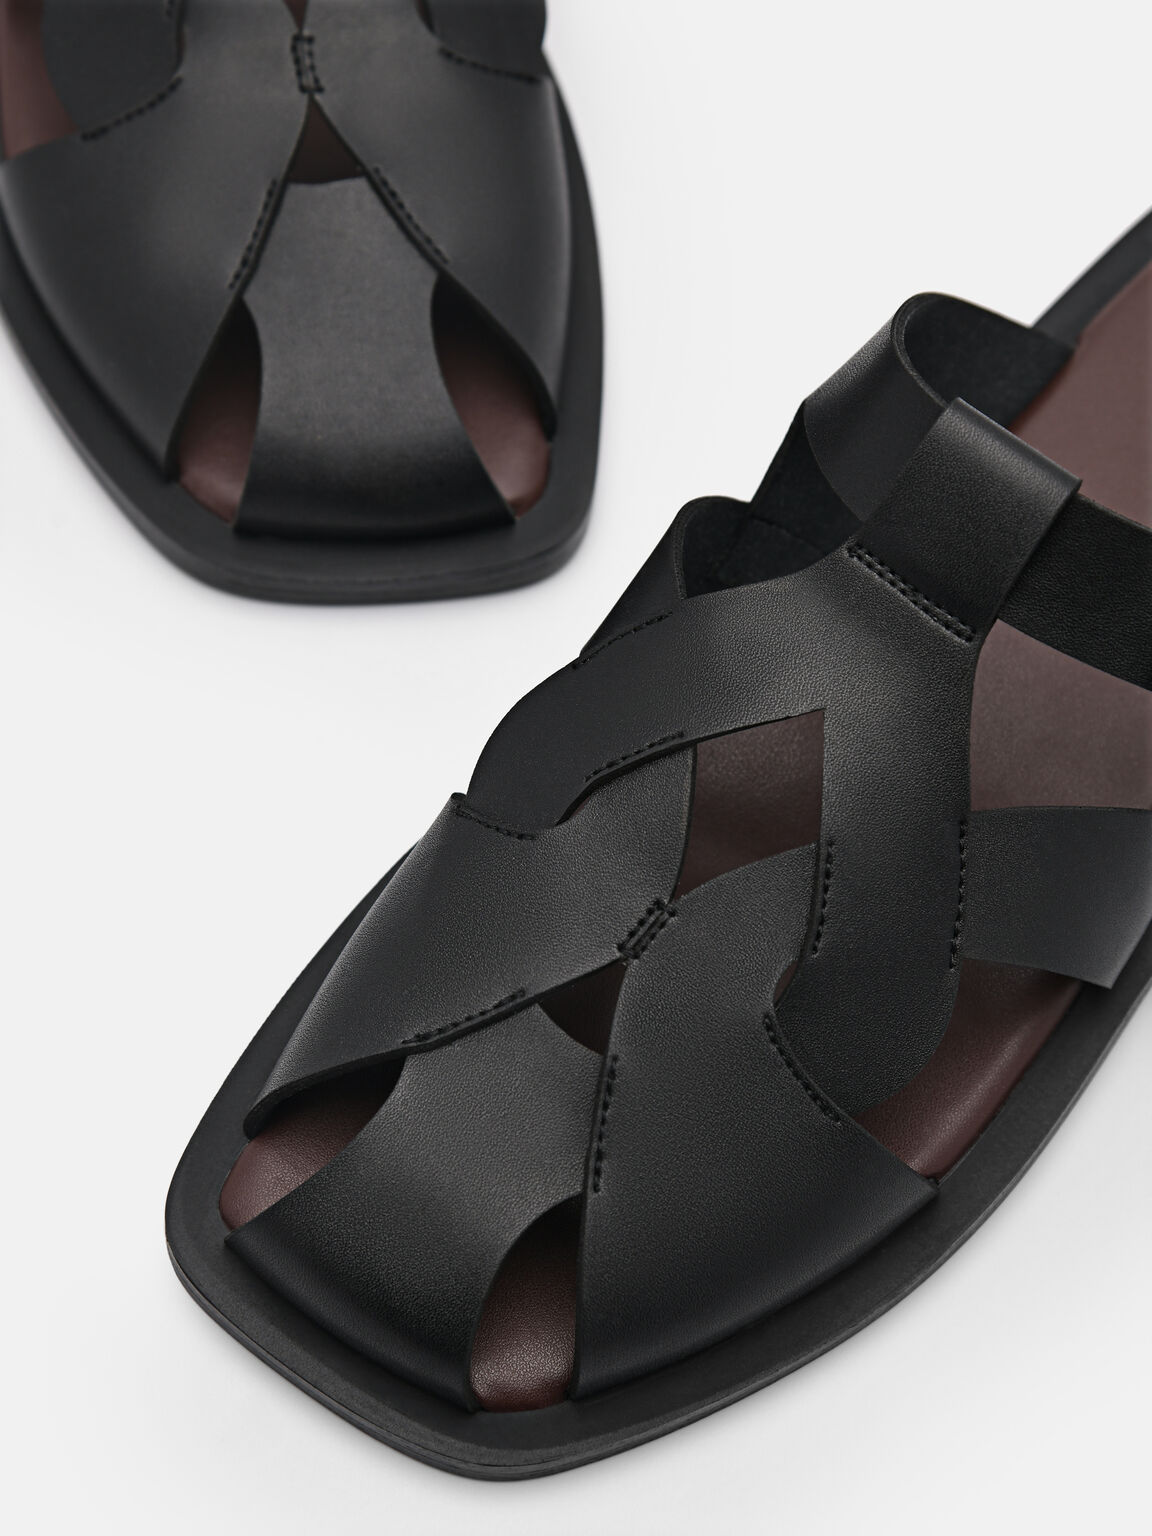 Eden Caged Sandals, Black